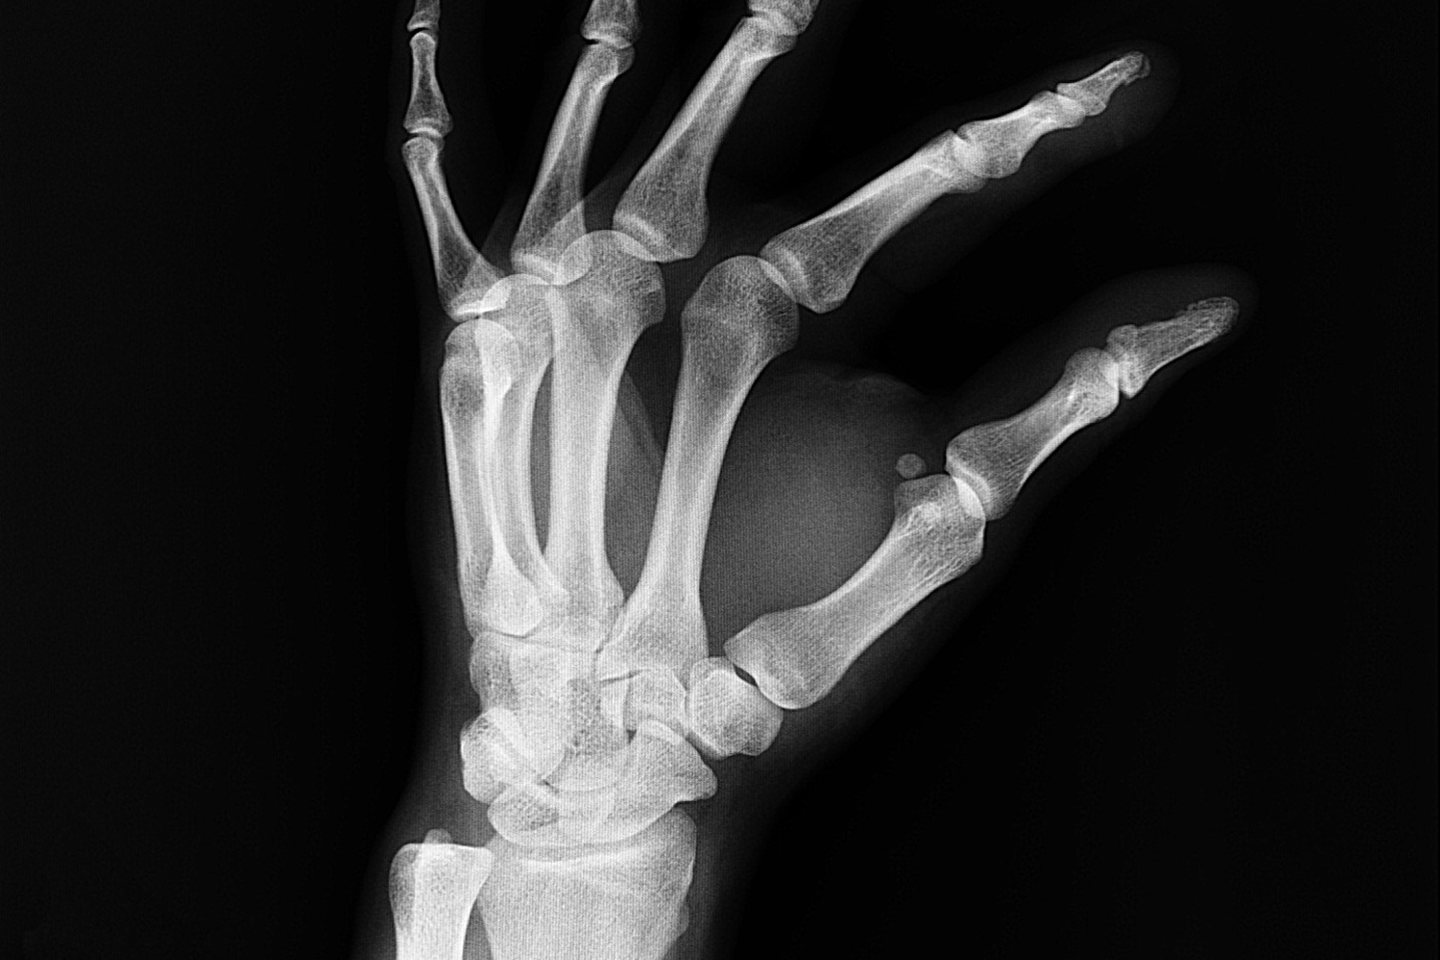 Broken Wrist (Colles Fracture)